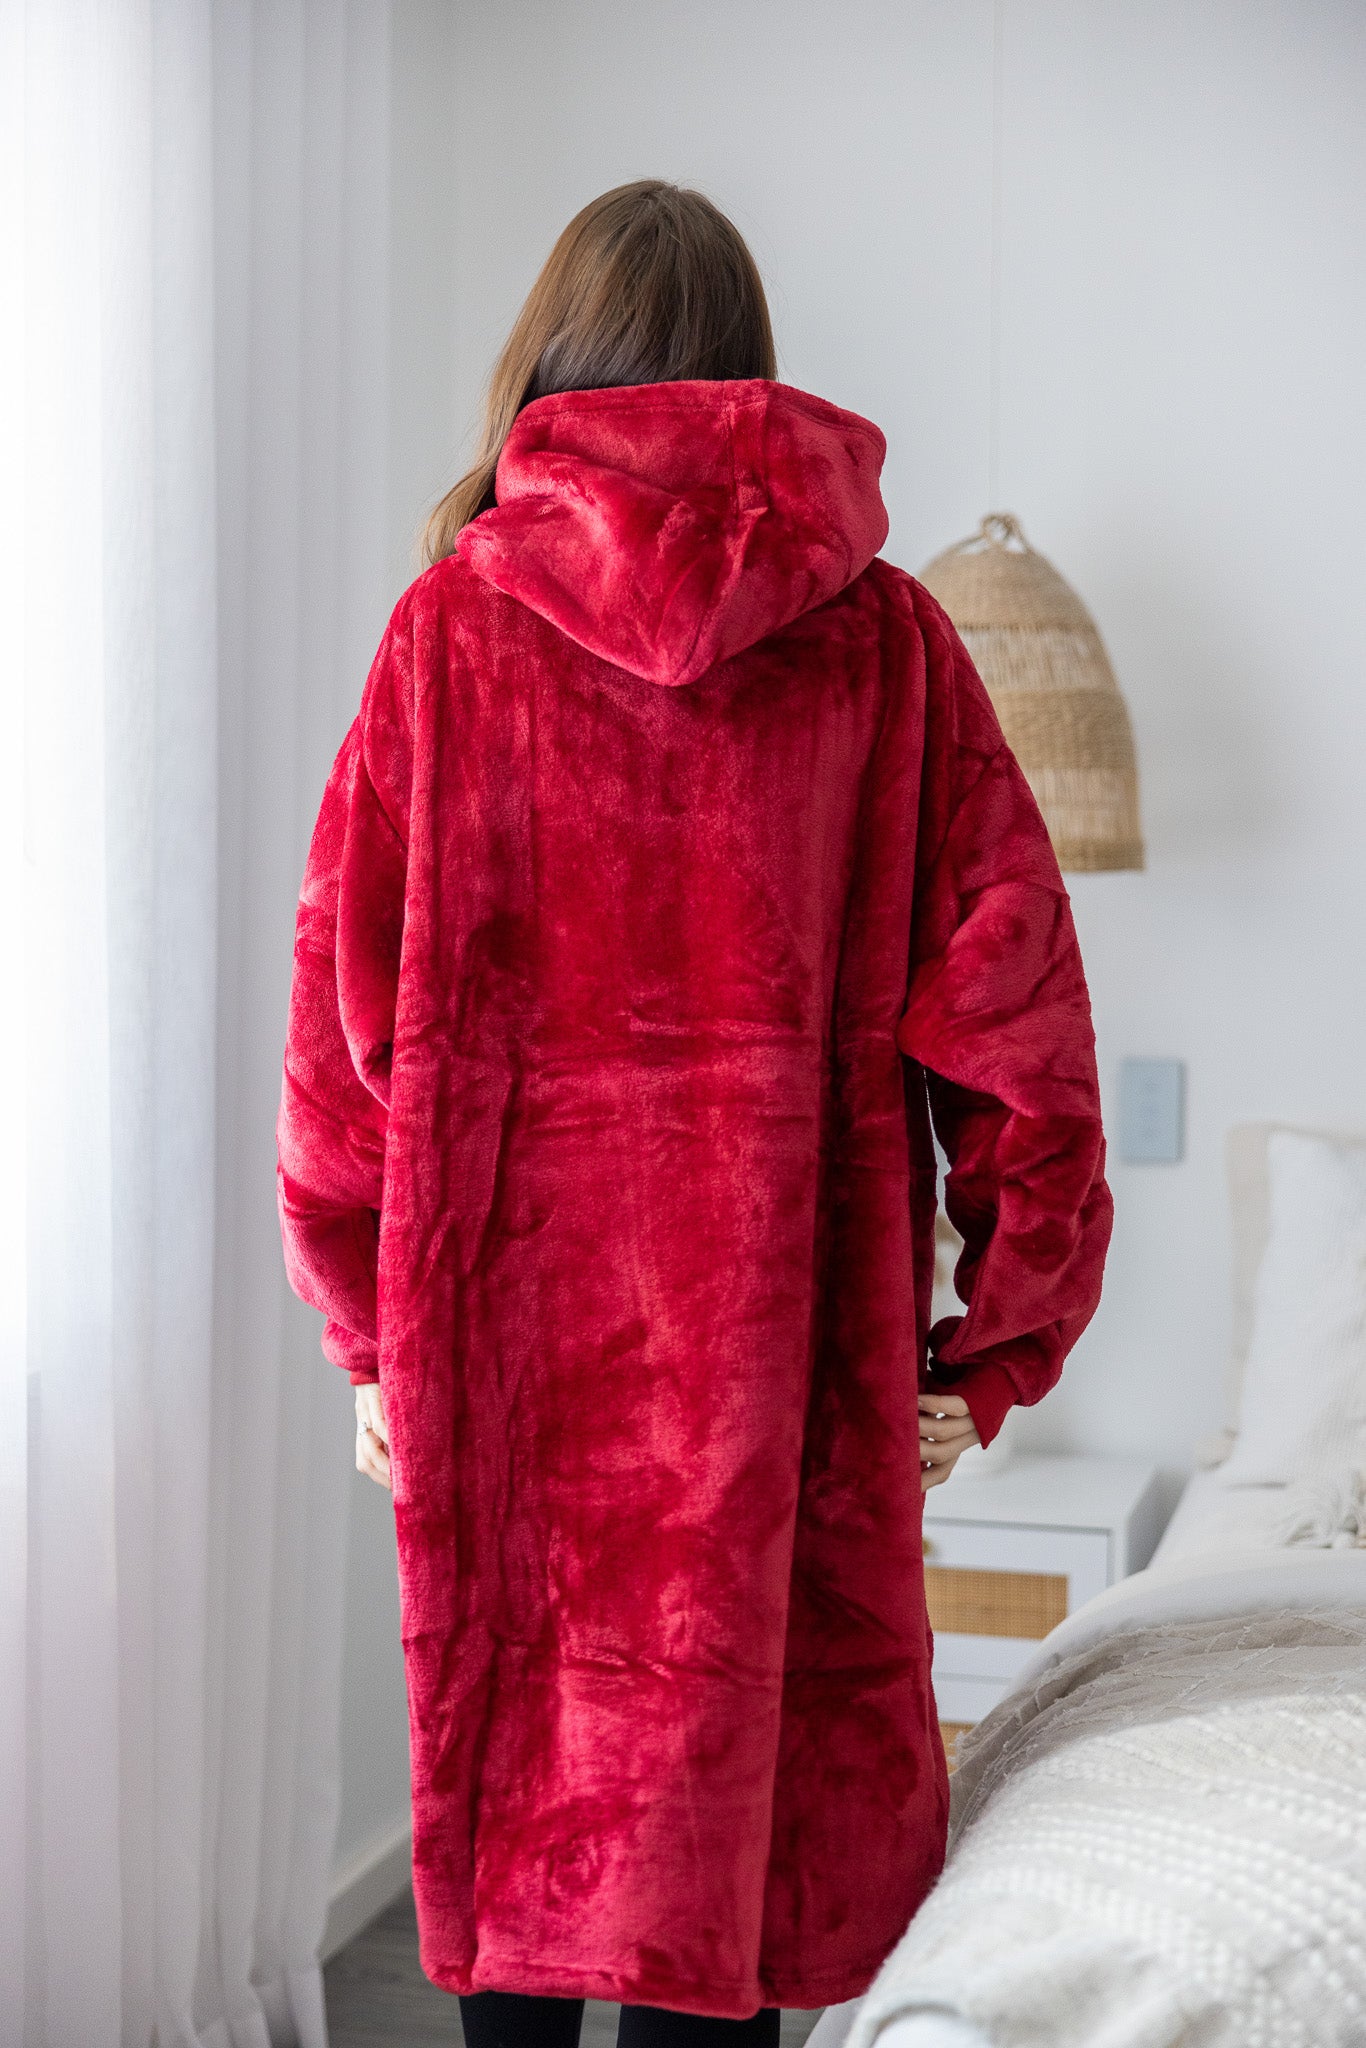 bh512887-RED-blanketjumper-jacket